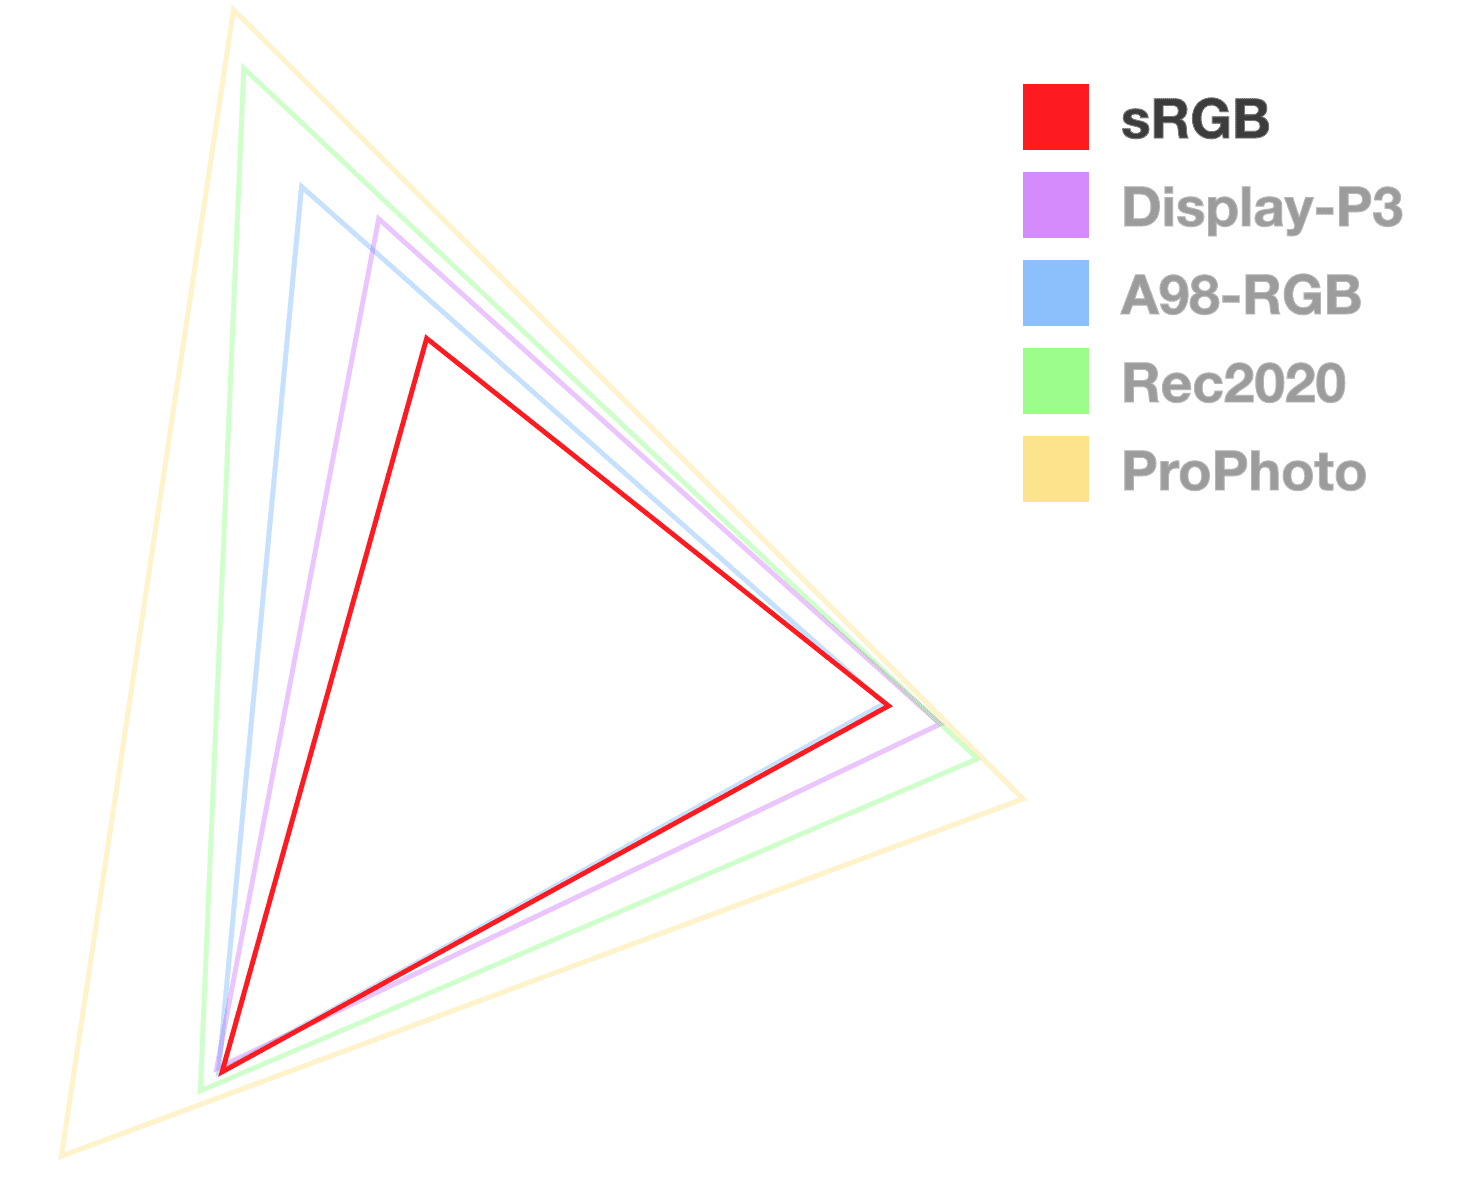 sRGB 三角形是唯一一个完全不透明的三角形，有助于直观呈现色域的大小。